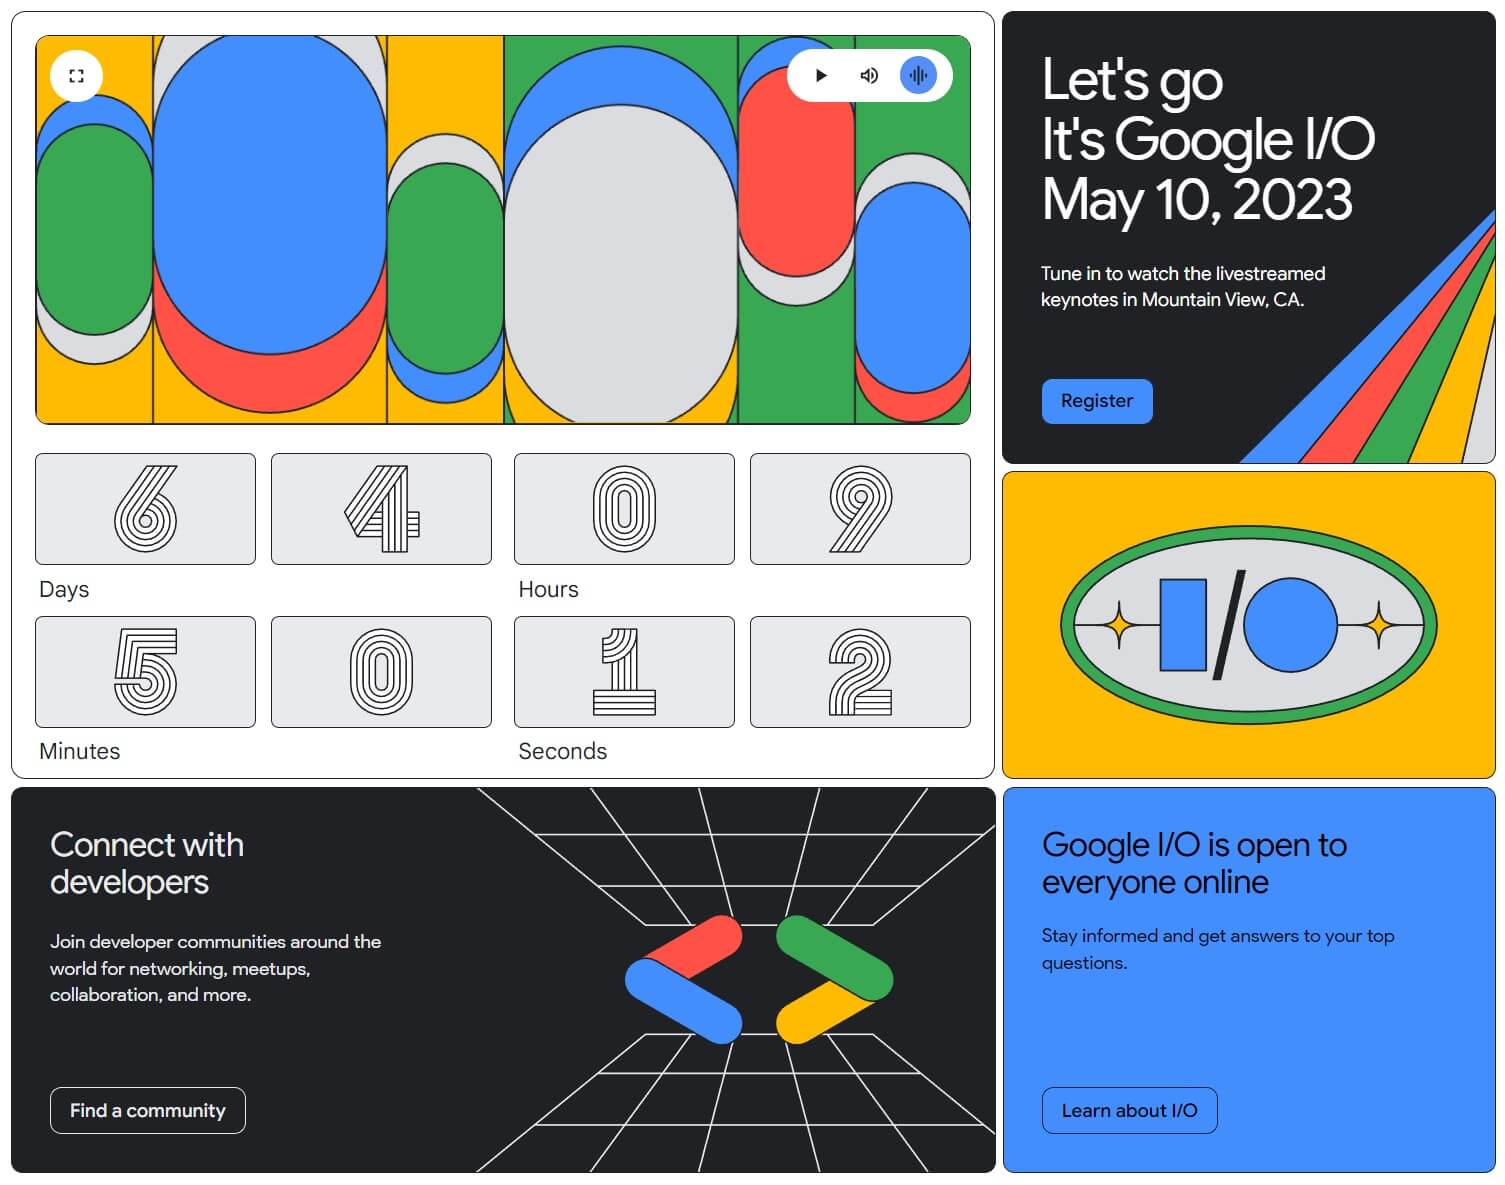 Google IO 2023 register